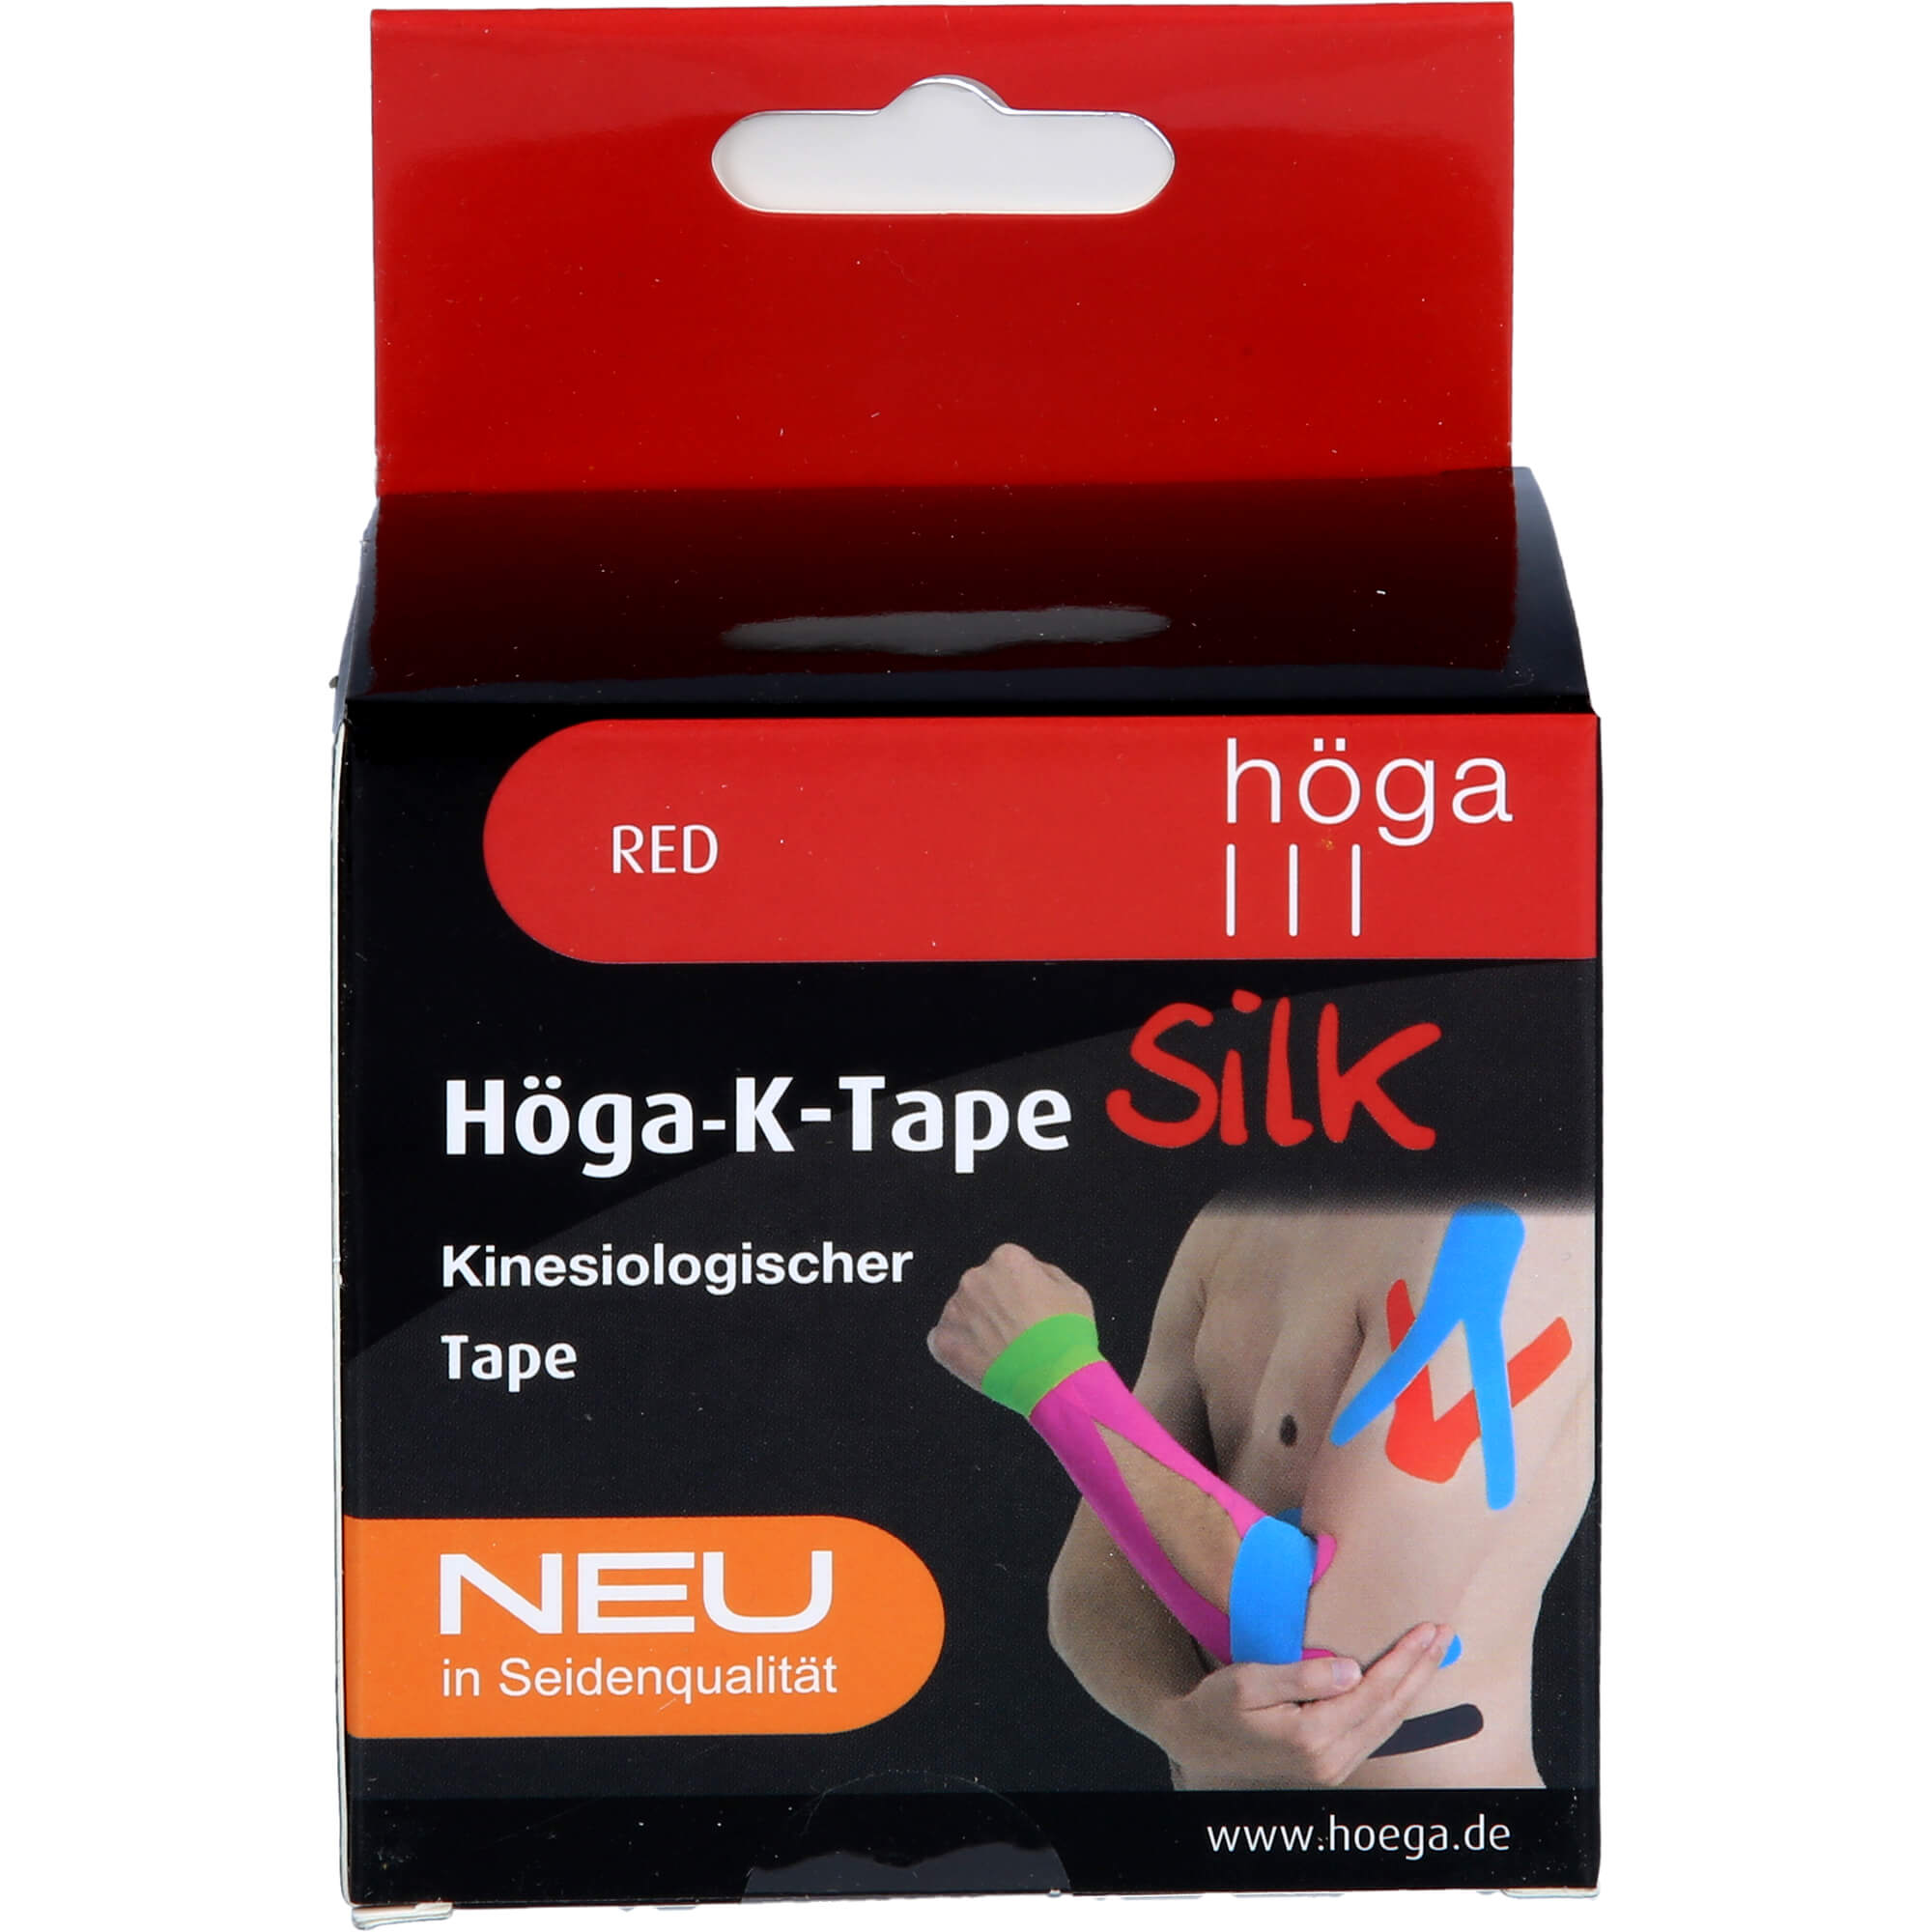 HÖGA-K-TAPE Silk 5 cmx5 m l.fr.red kinesiol.Tape